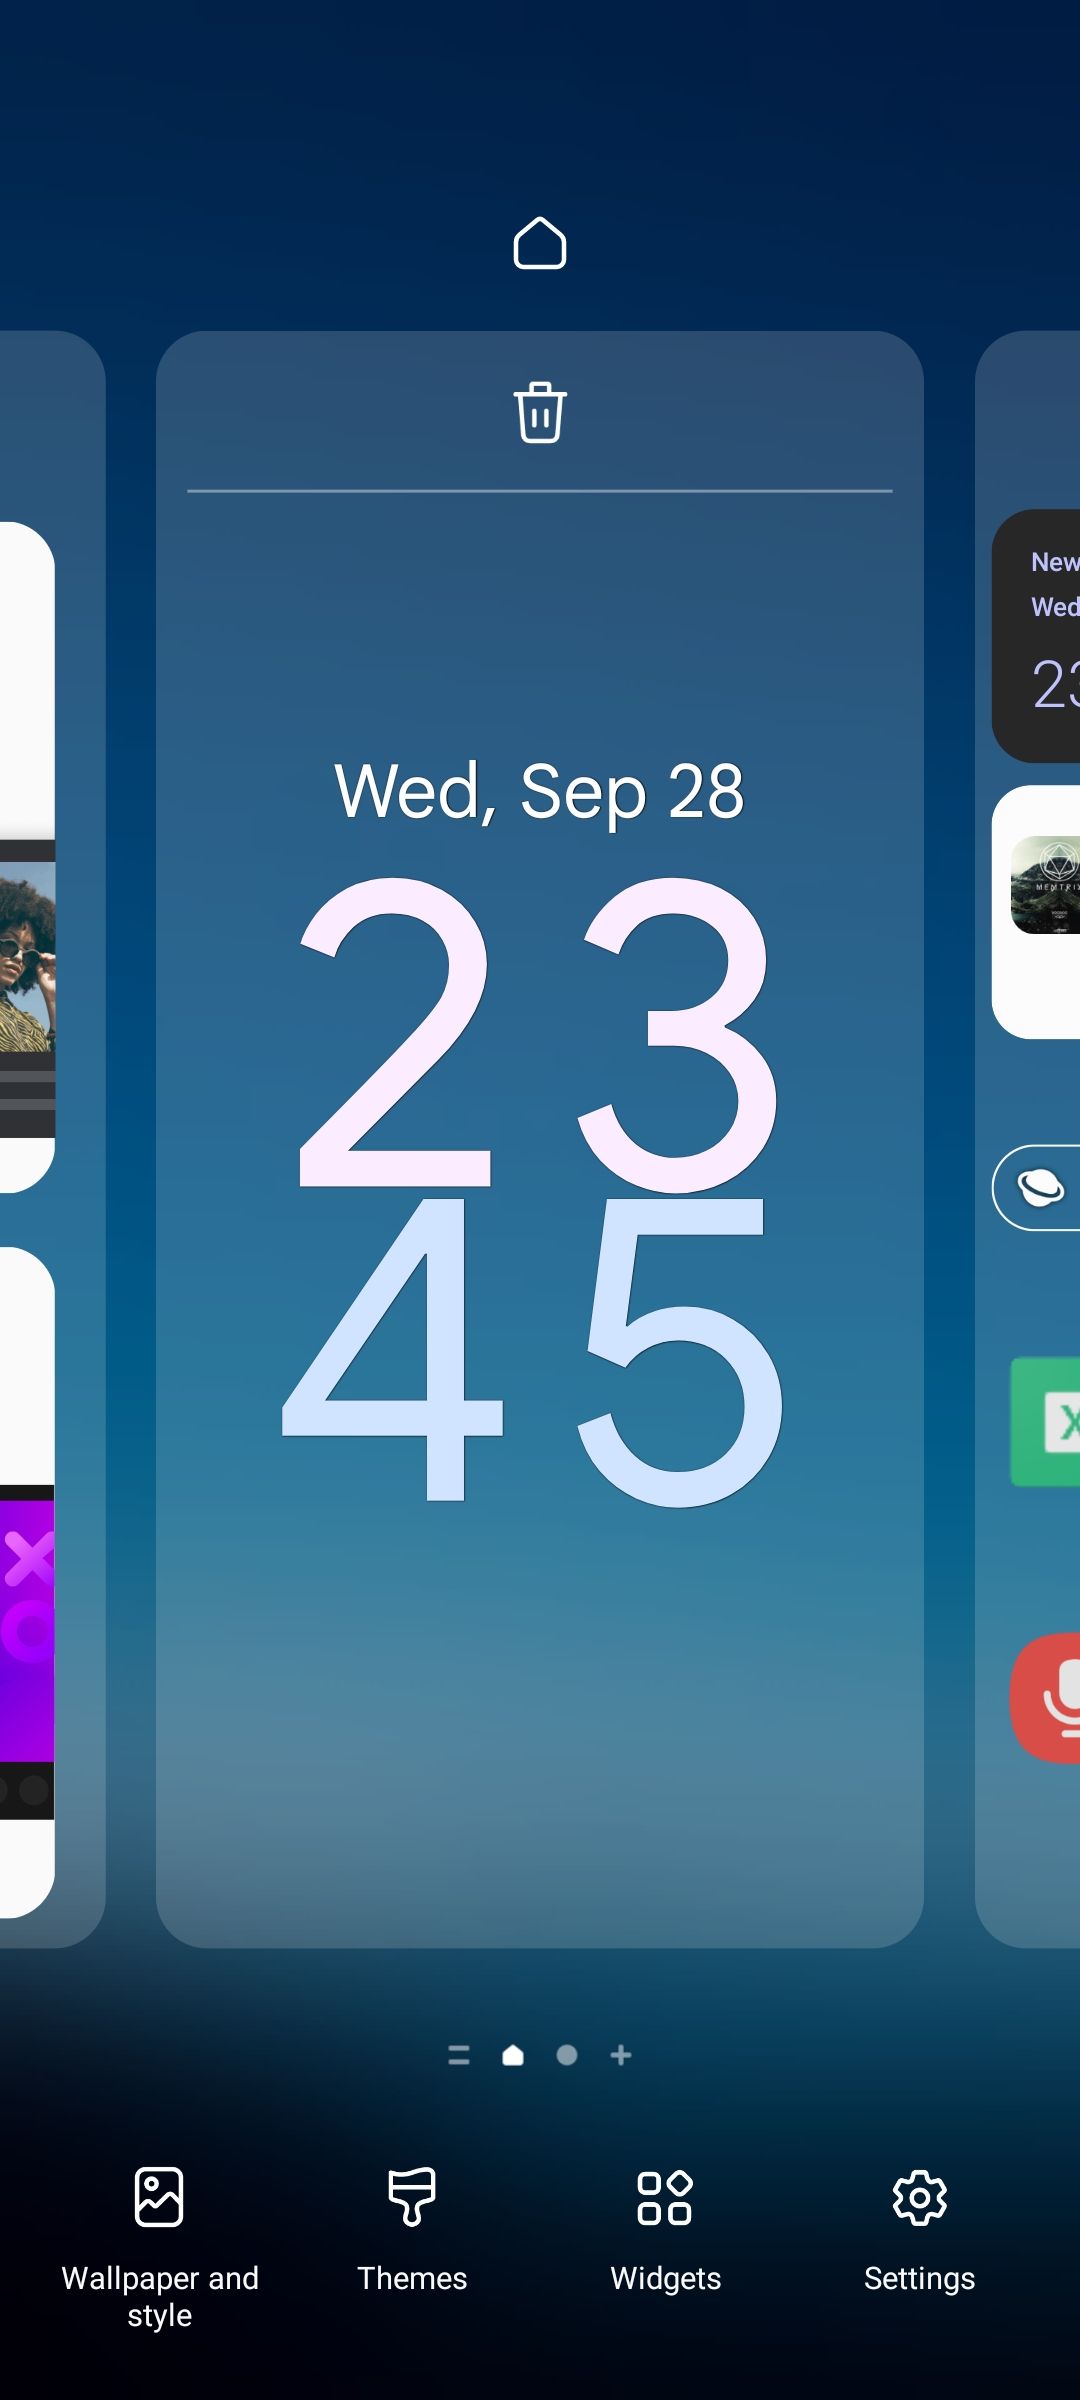 Samsung One UI Home screen menu options